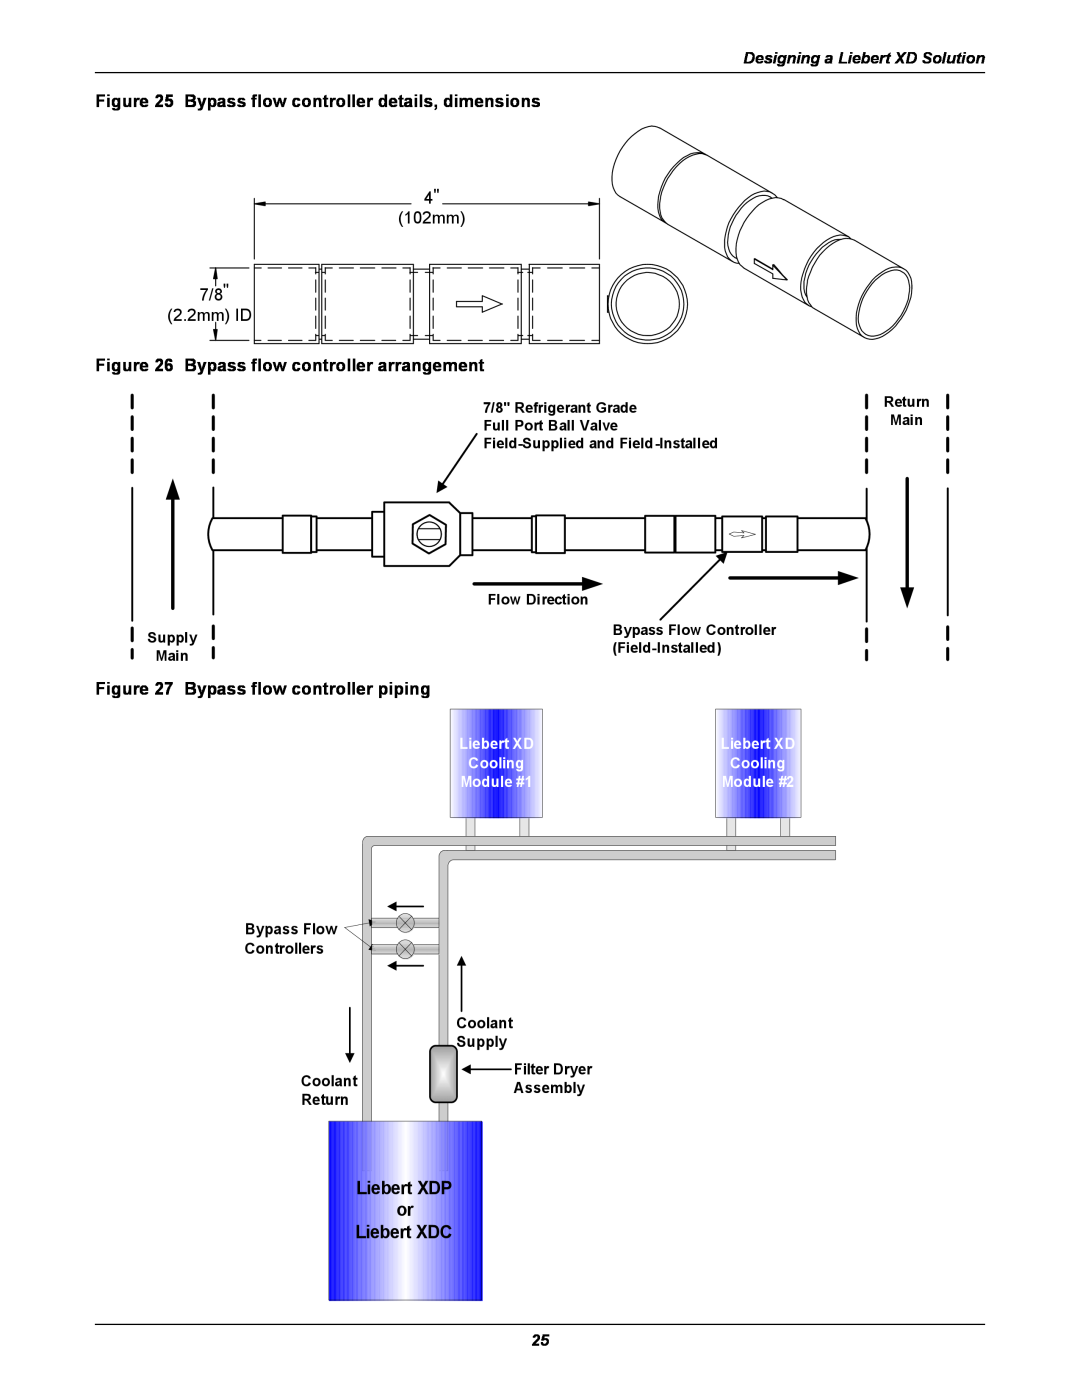 Emerson Xtreme Density manual Liebert XDP or Liebert XDC, Bypass flow controller details, dimensions, Cooling, Module #1 